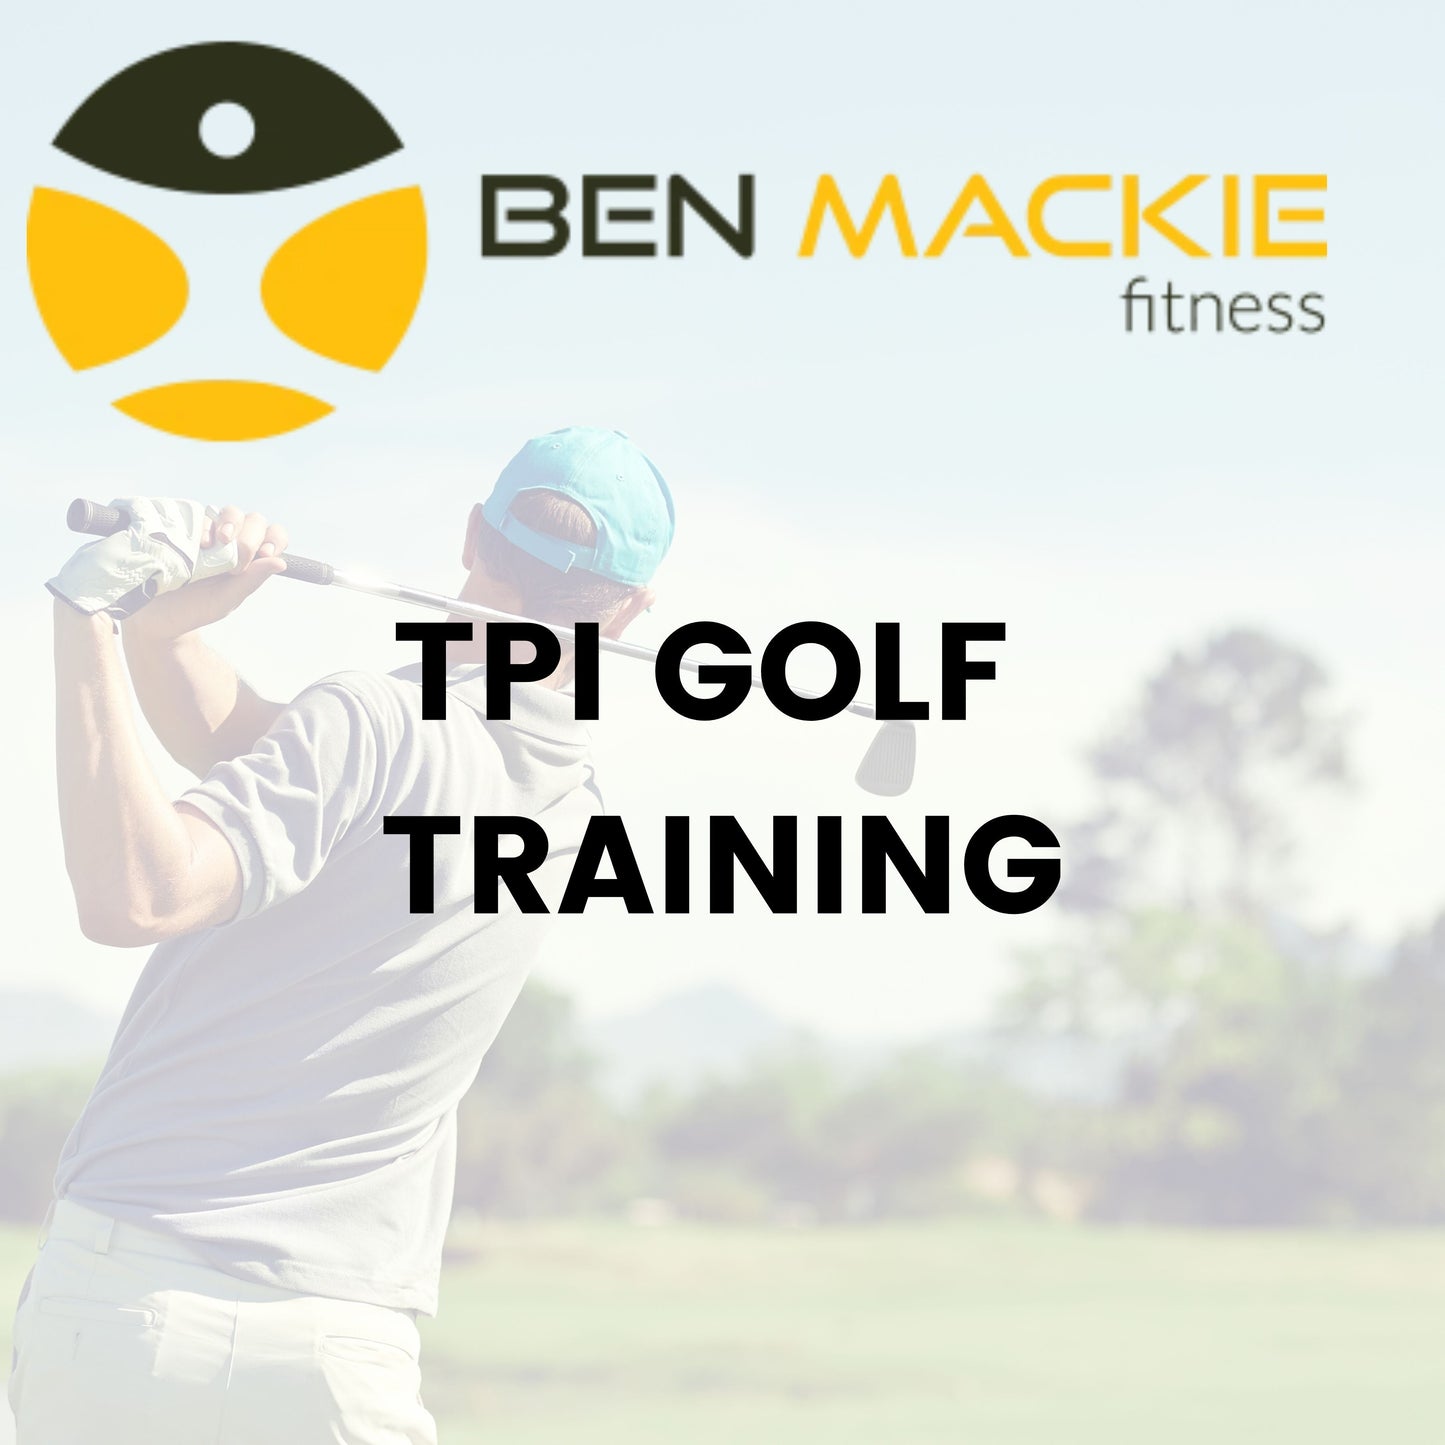 Ben Mackie Fitness TPI Golf Assessment